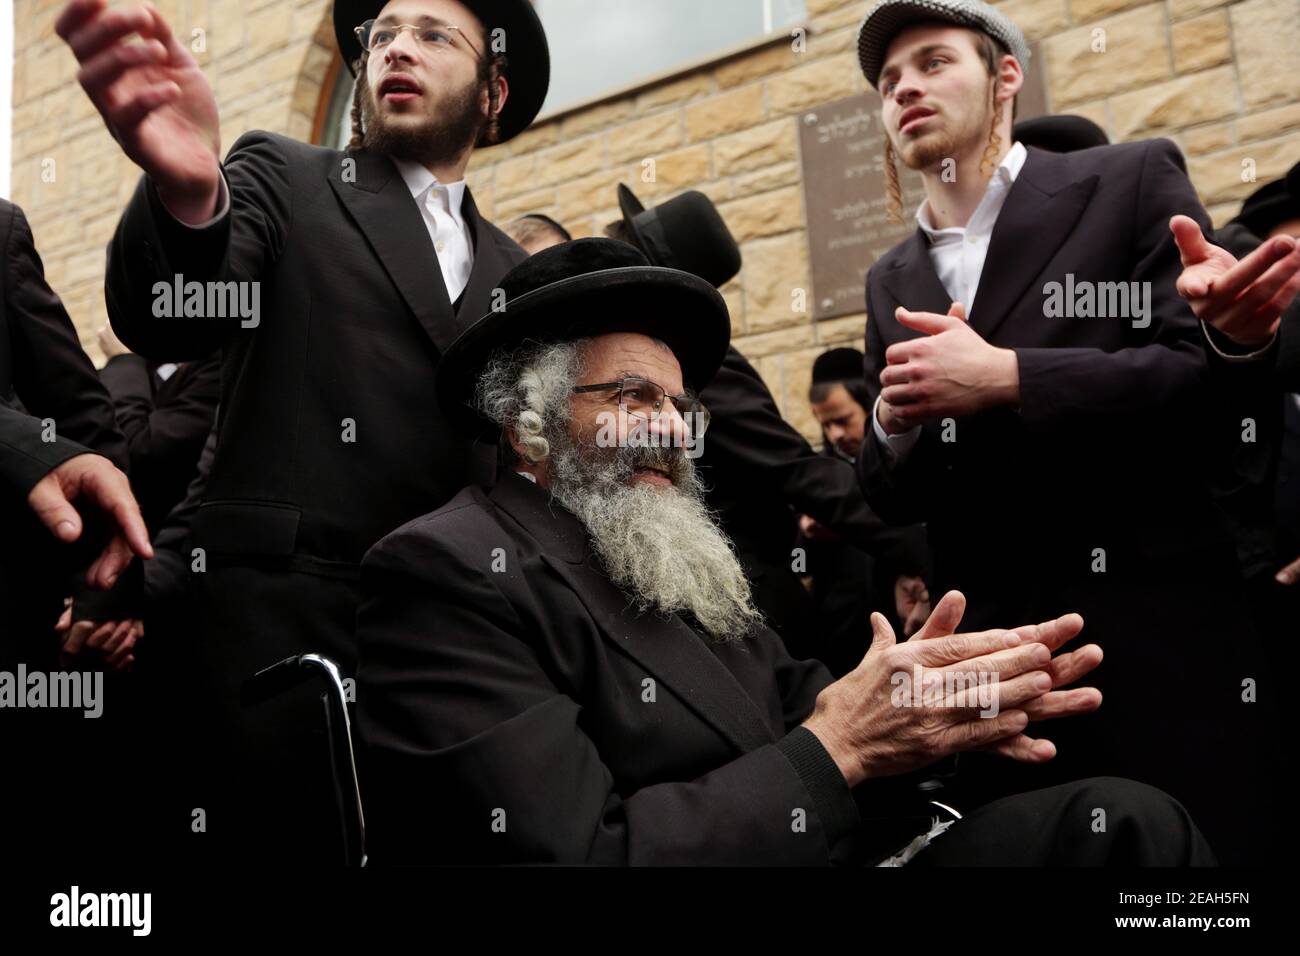 Lelow, Polen 2. Februar 2020: Hassidischer jude feiert während des chassidischen Feiertages den 206. Todestag von tzadik Dawid Biderman Stockfoto